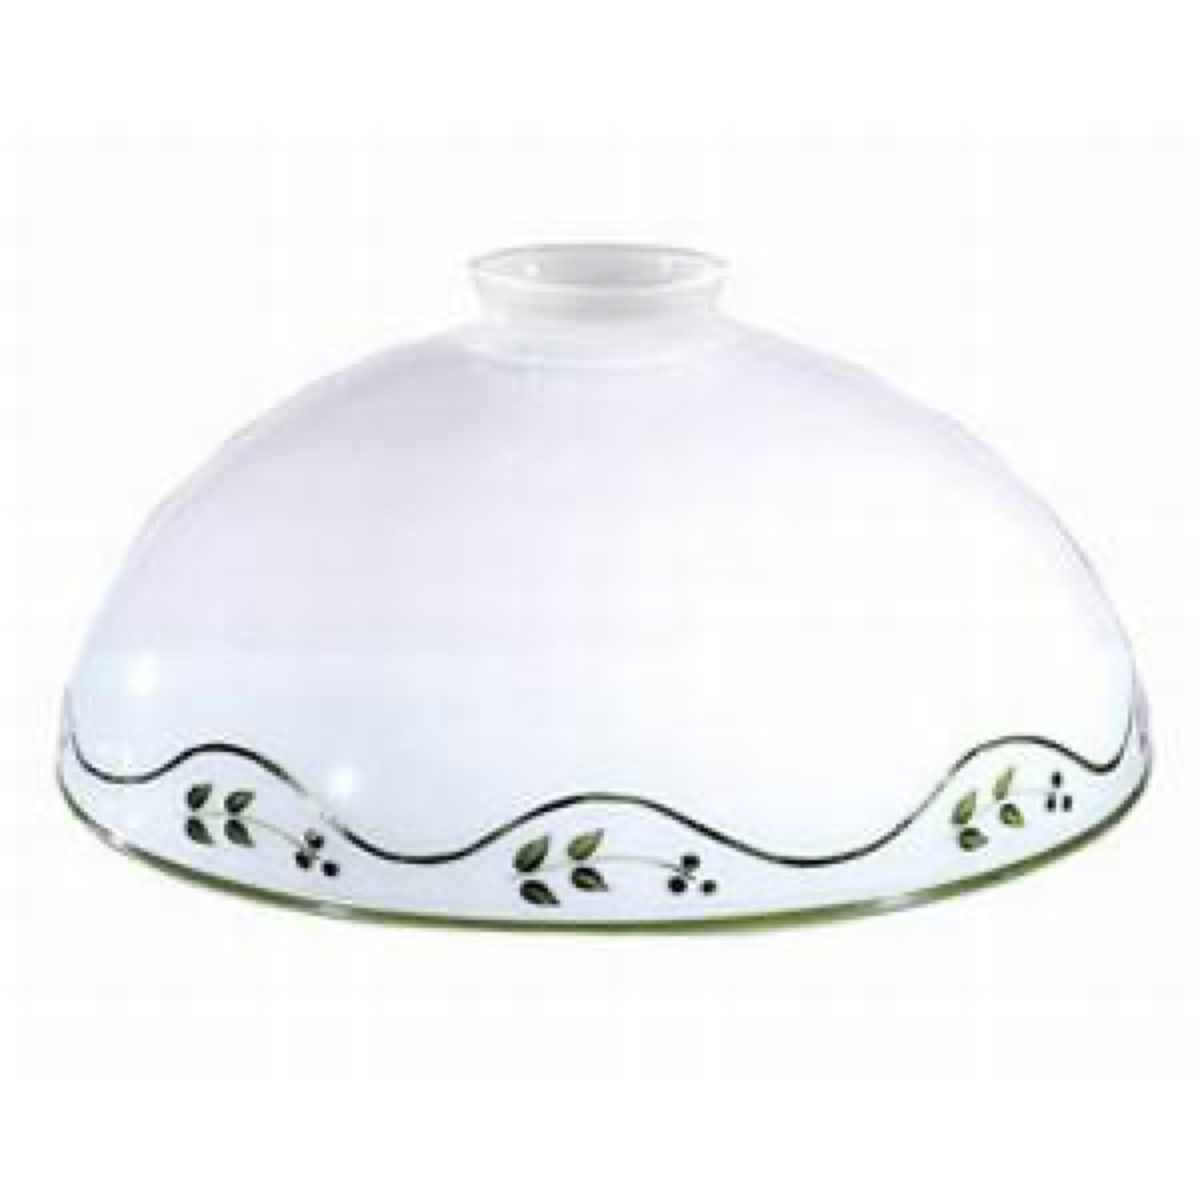 KOLARZ LeuchtenErsatzglas der Serie Nonna Kuppel grün Durchmesser 30 cm